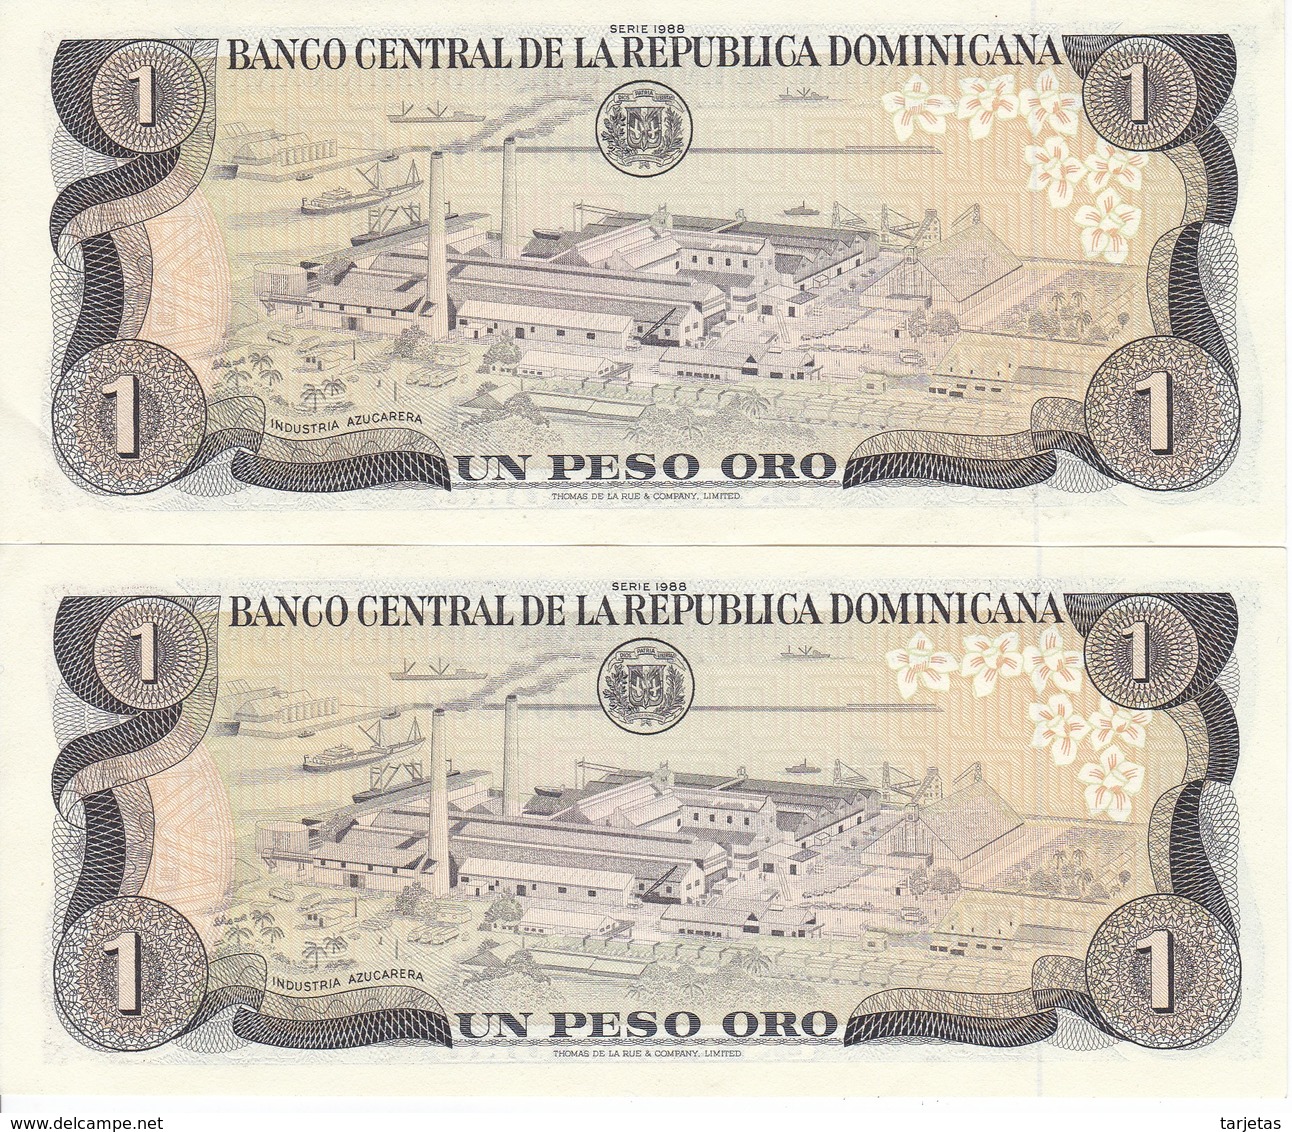 PAREJA CORRELATIVA DE LA REPUBLICA DOMINICANA DE 1 PESO ORO DEL AÑO 1988 EN CALIDAD EBC (XF) (BANKNOTE) - Repubblica Dominicana